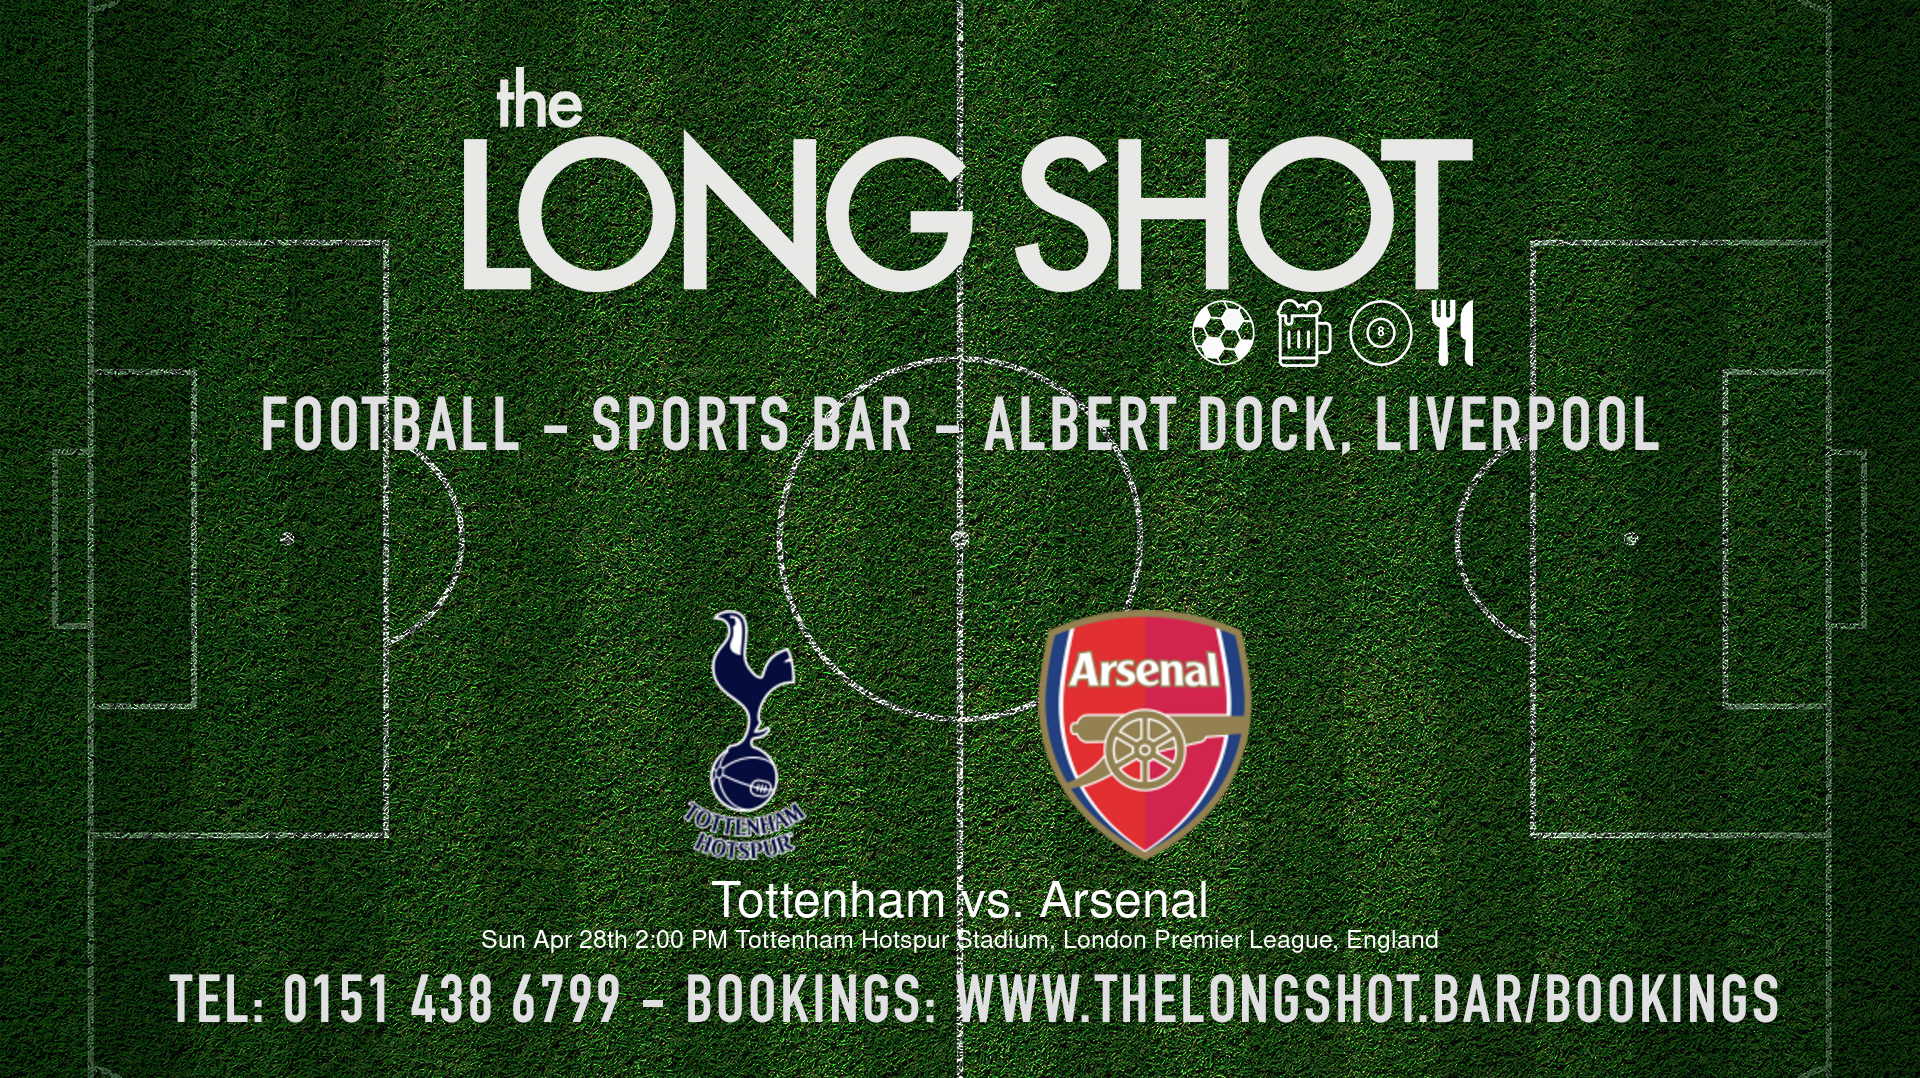 Event image - Tottenham vs. Arsenal